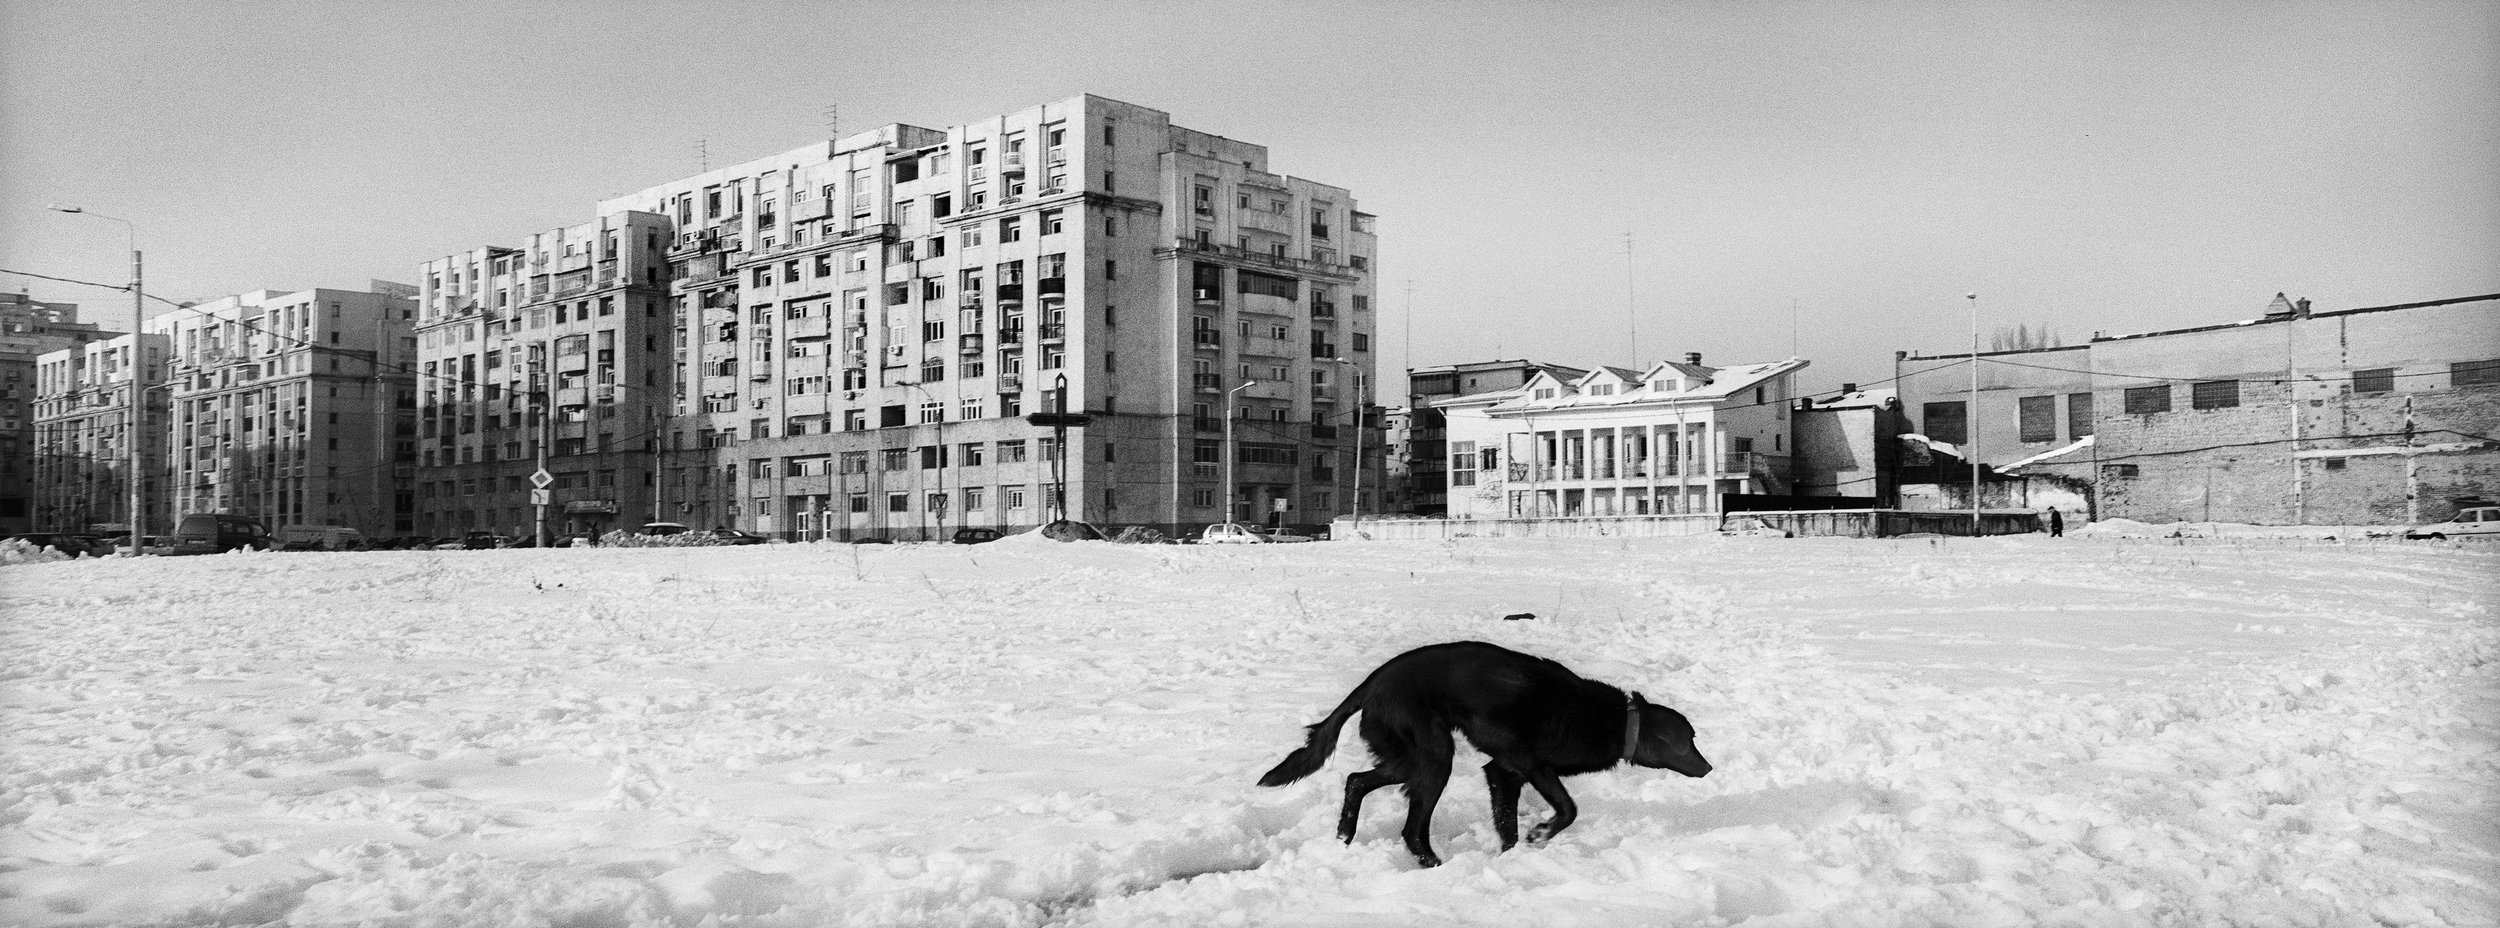 ©Stephen Dupont - Bucharest Wild Dogs 2001 - 0103 A046 #1A_Book.jpg